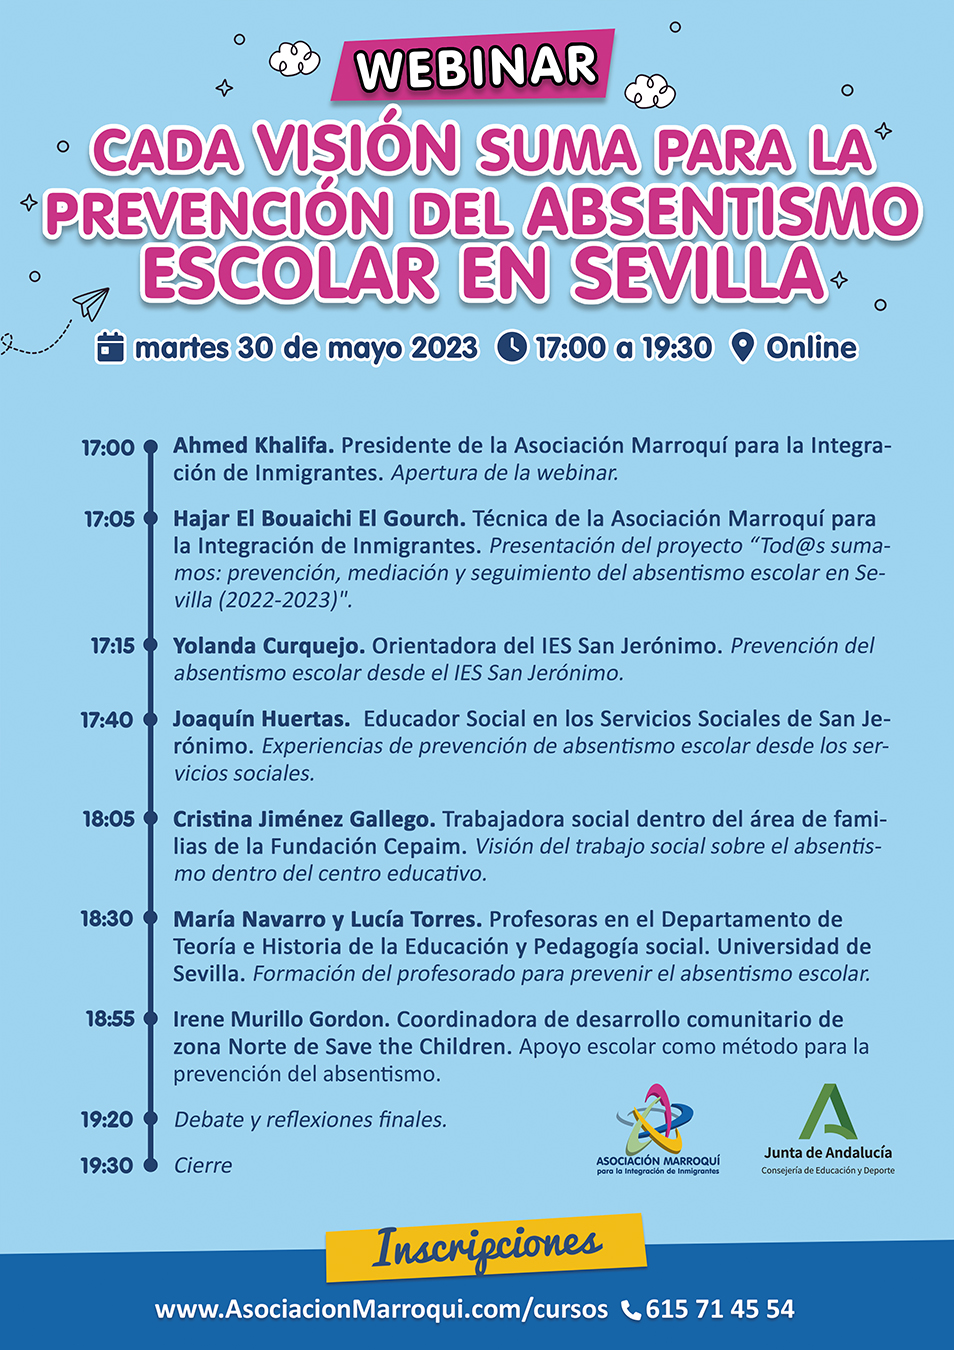 Webinar “Cada visión suma para la prevención del absentismo escolar en Sevilla”